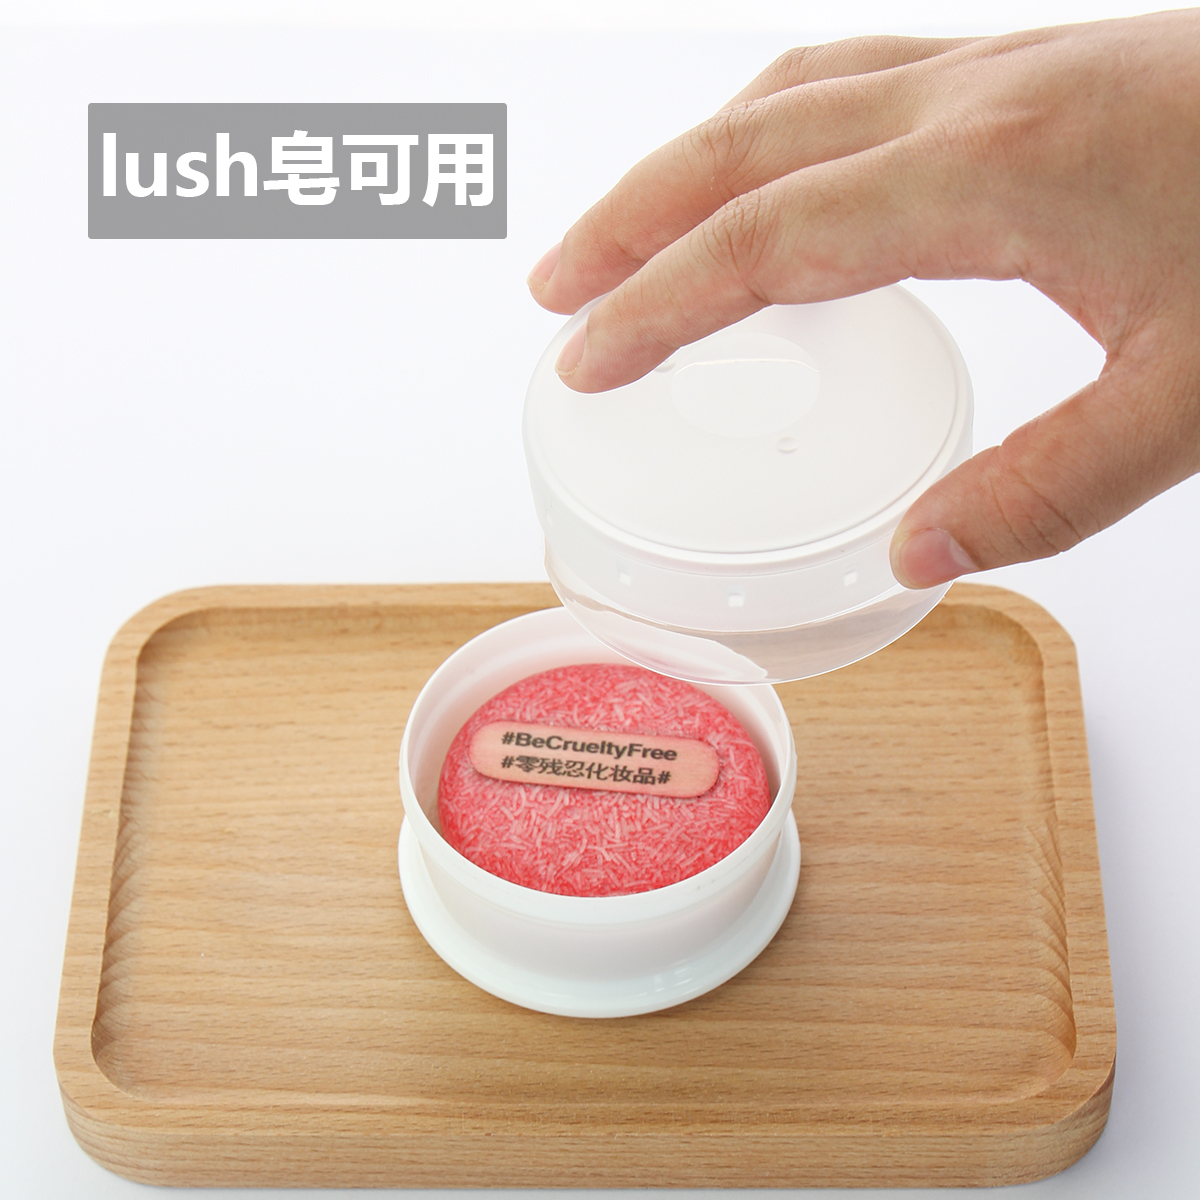 lush海绵皂盒便携手工精油洗脸迷你小圆形皂盒日式旅行沥水香皂盒